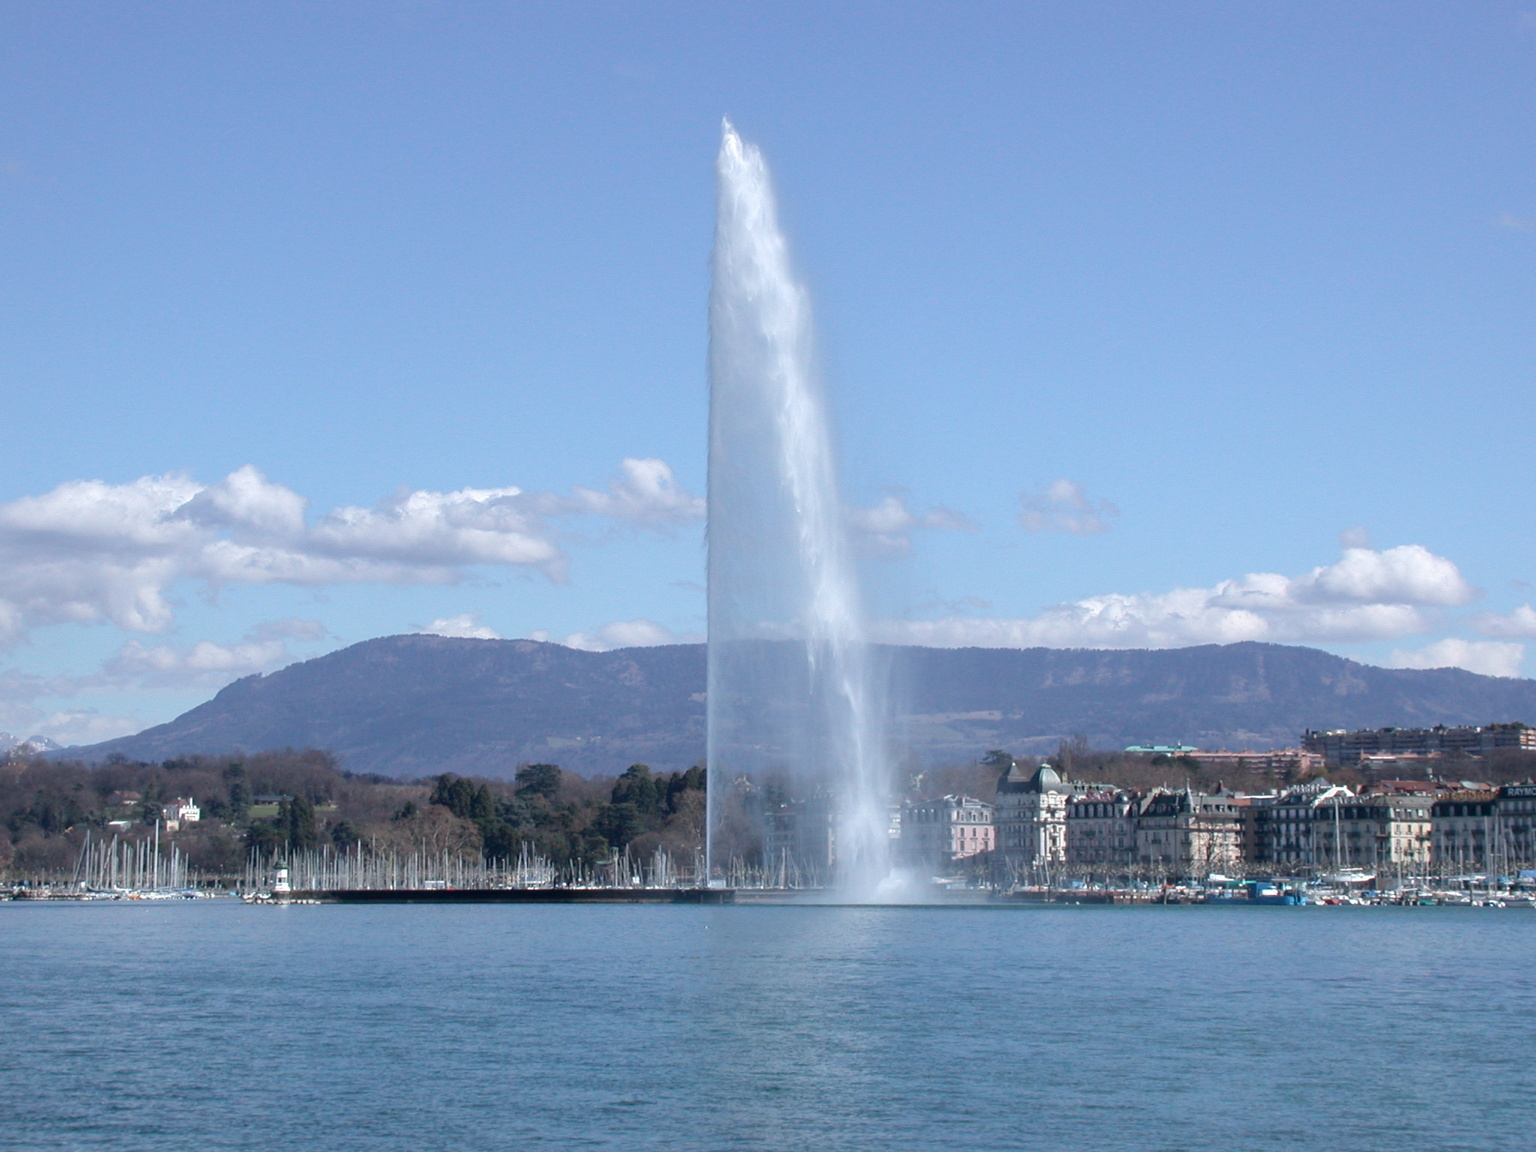 De 140 meter hoge fontein in het meer van Gen�ve